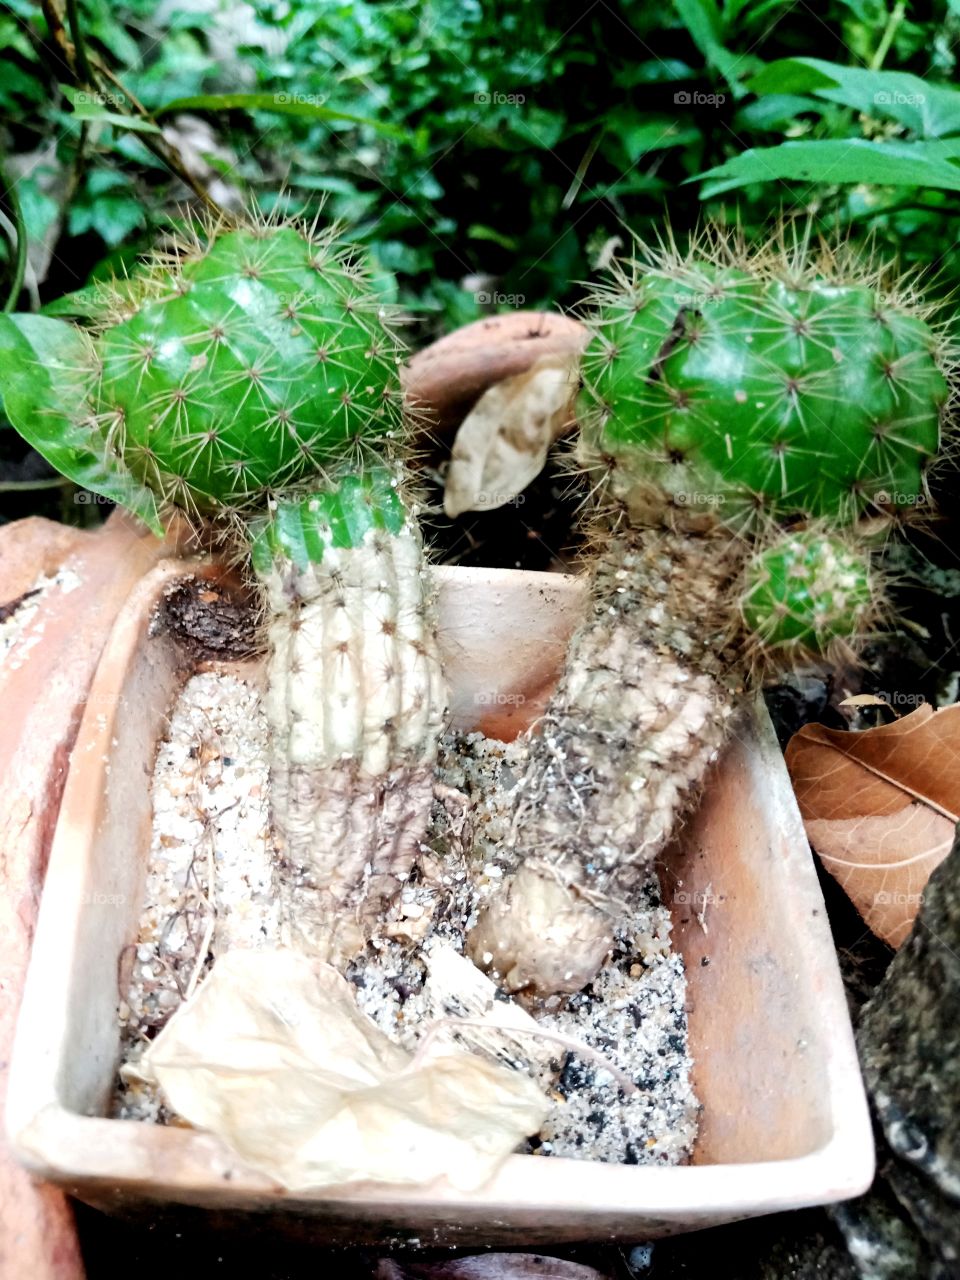 cacti cactus green brown